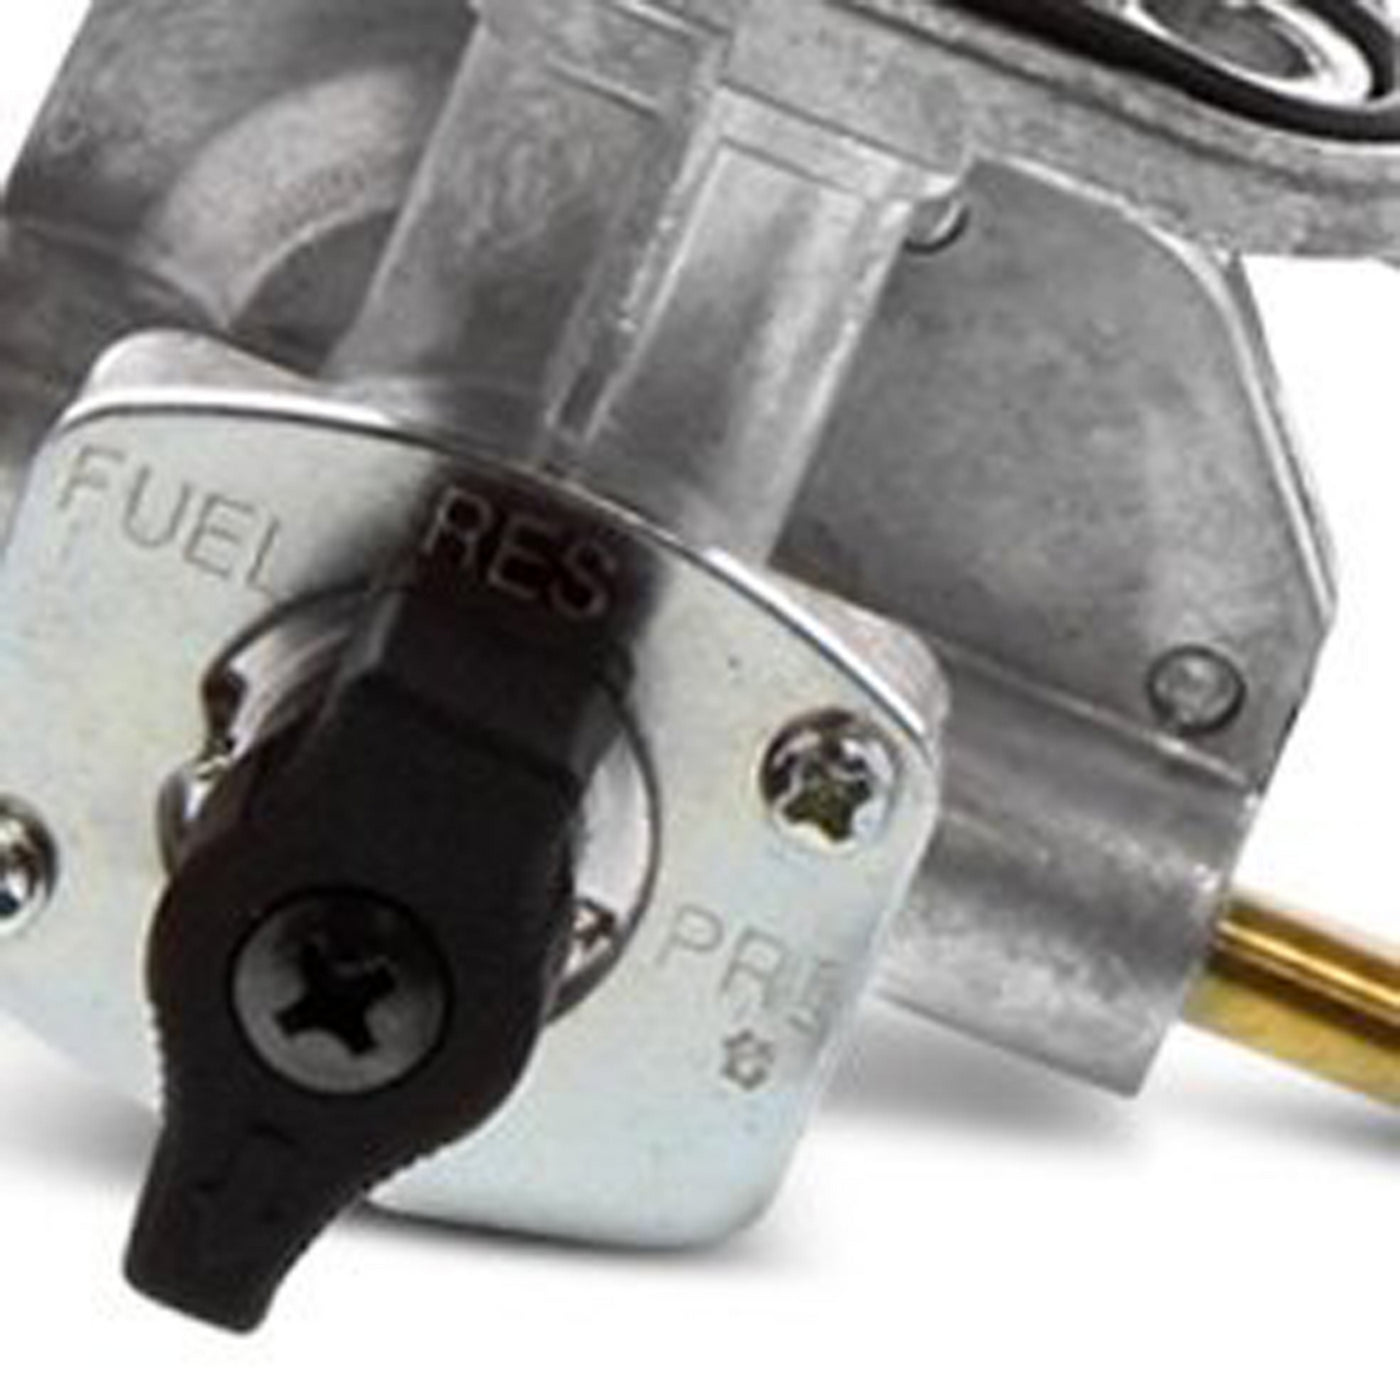 Fuel Star FS101-0115 Fuel Valve Kit #FS101-0115